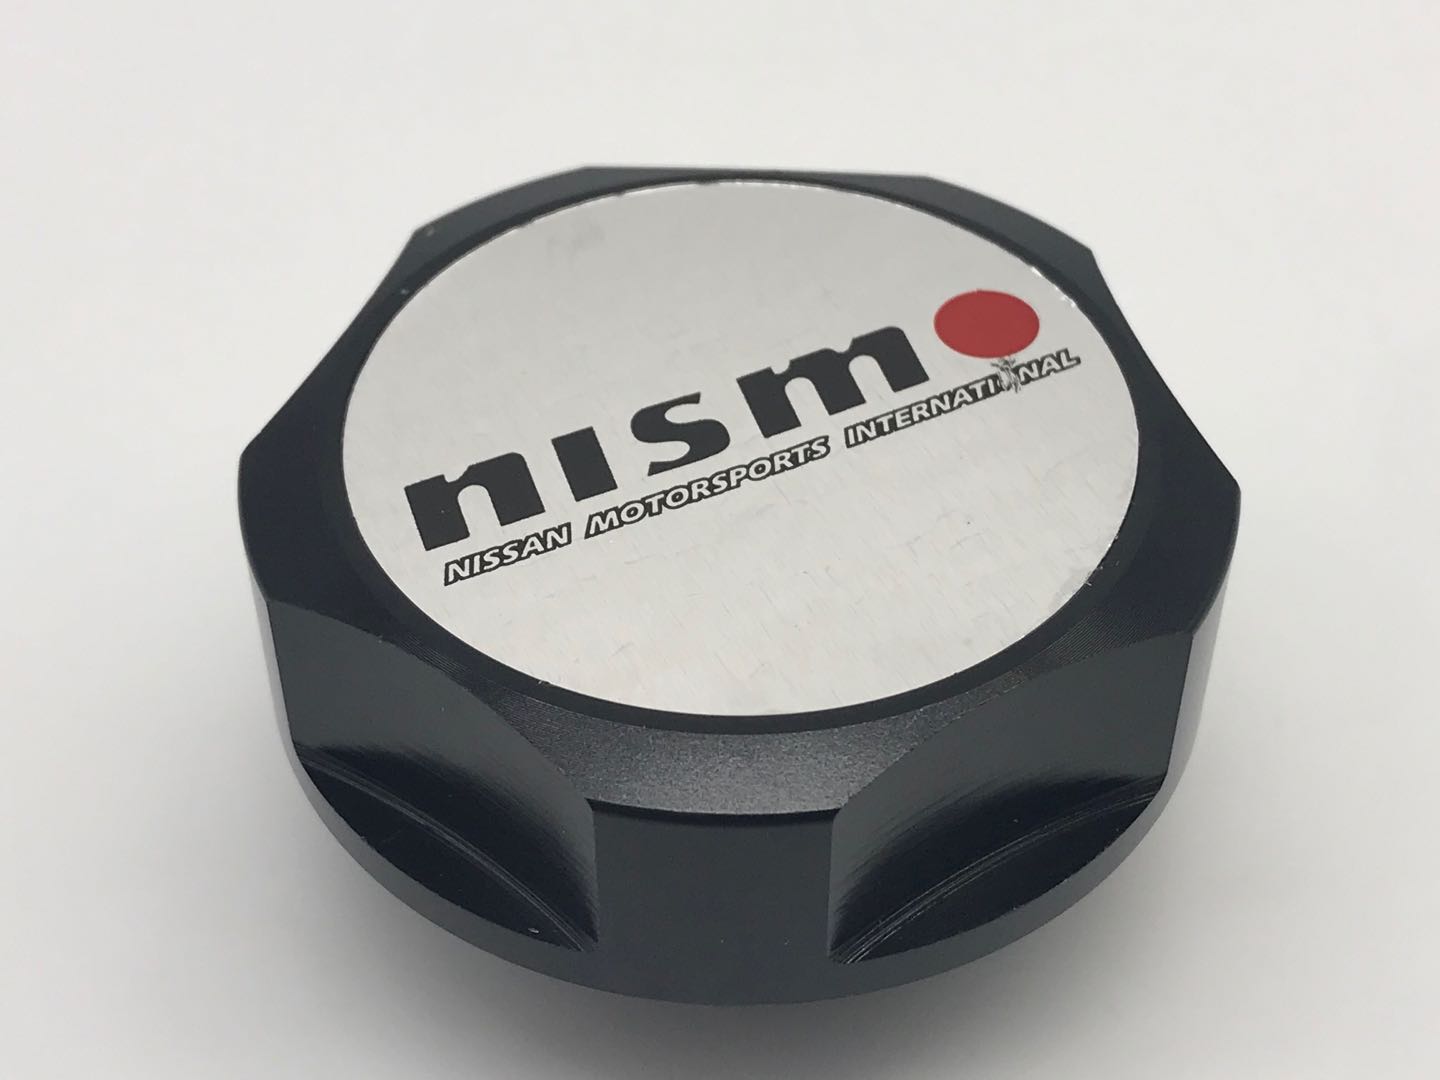 ฝาน้ำมันเครื่อง Nismo Nissan มีให้เลือกทั้งหมด 4 สีด้วยกัน  ฝาถังน้ำมันเครื่อง ฝาปิดน้ำมันเครื่อง